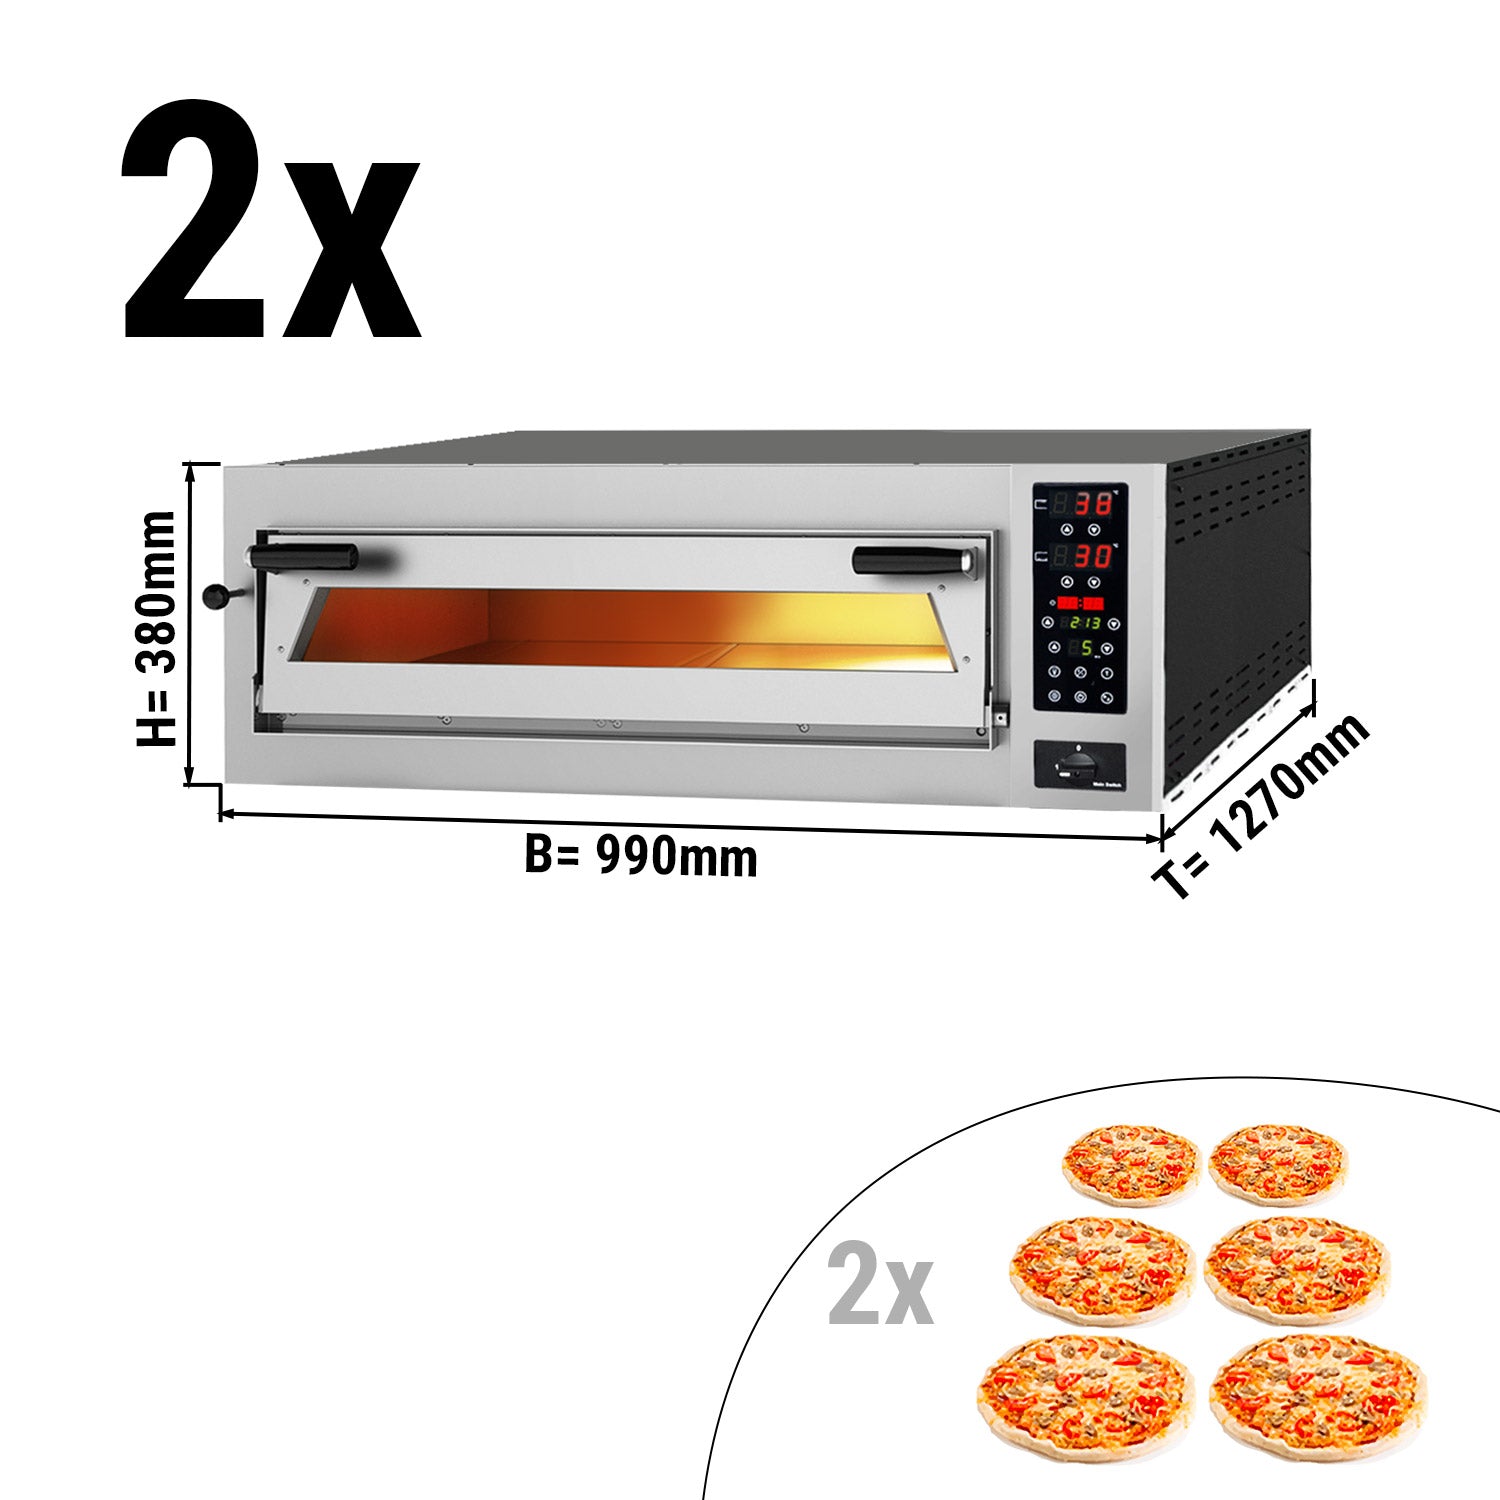 (2 броя) Фурна за пица 6 + 6х 35 см - дълбока - със сензорен екран